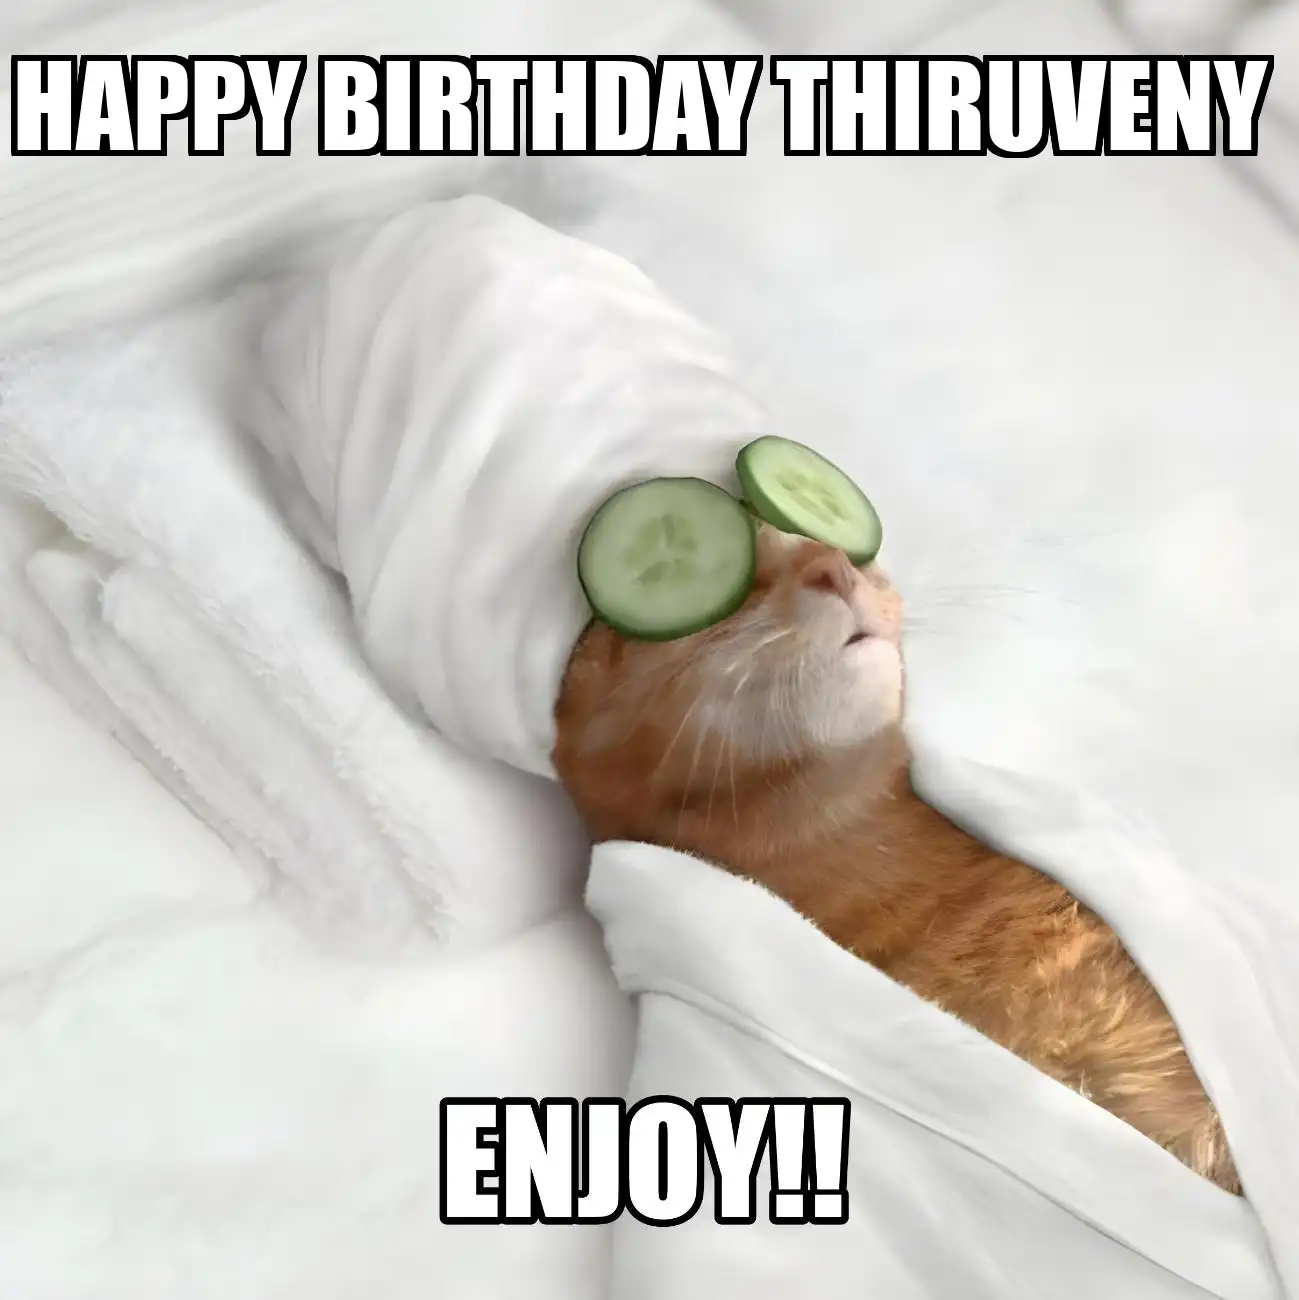 Happy Birthday Thiruveny Enjoy Cat Meme